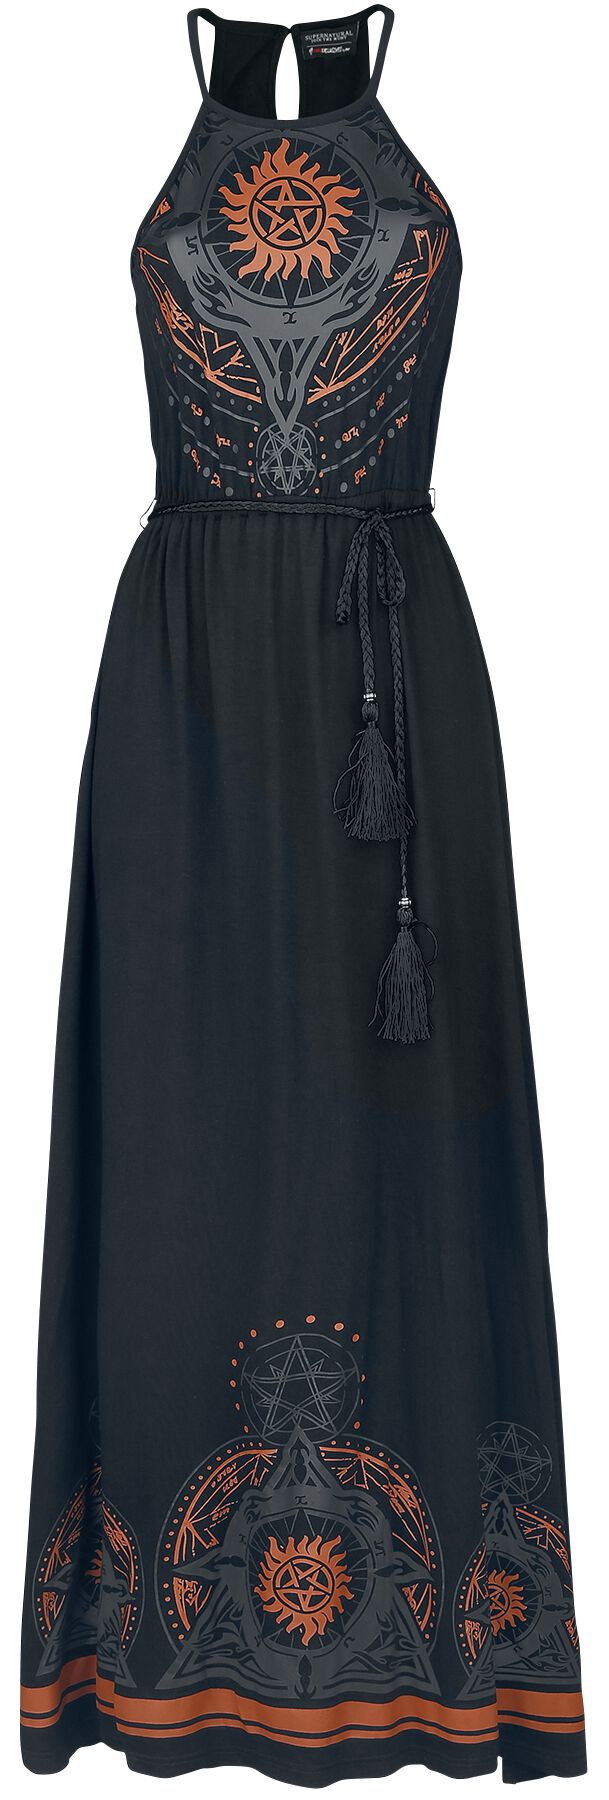 Supernatural Kleid lang - Mandala - S bis XXL - für Damen - Größe L - schwarz  - EMP exklusives Merchandise! von Supernatural